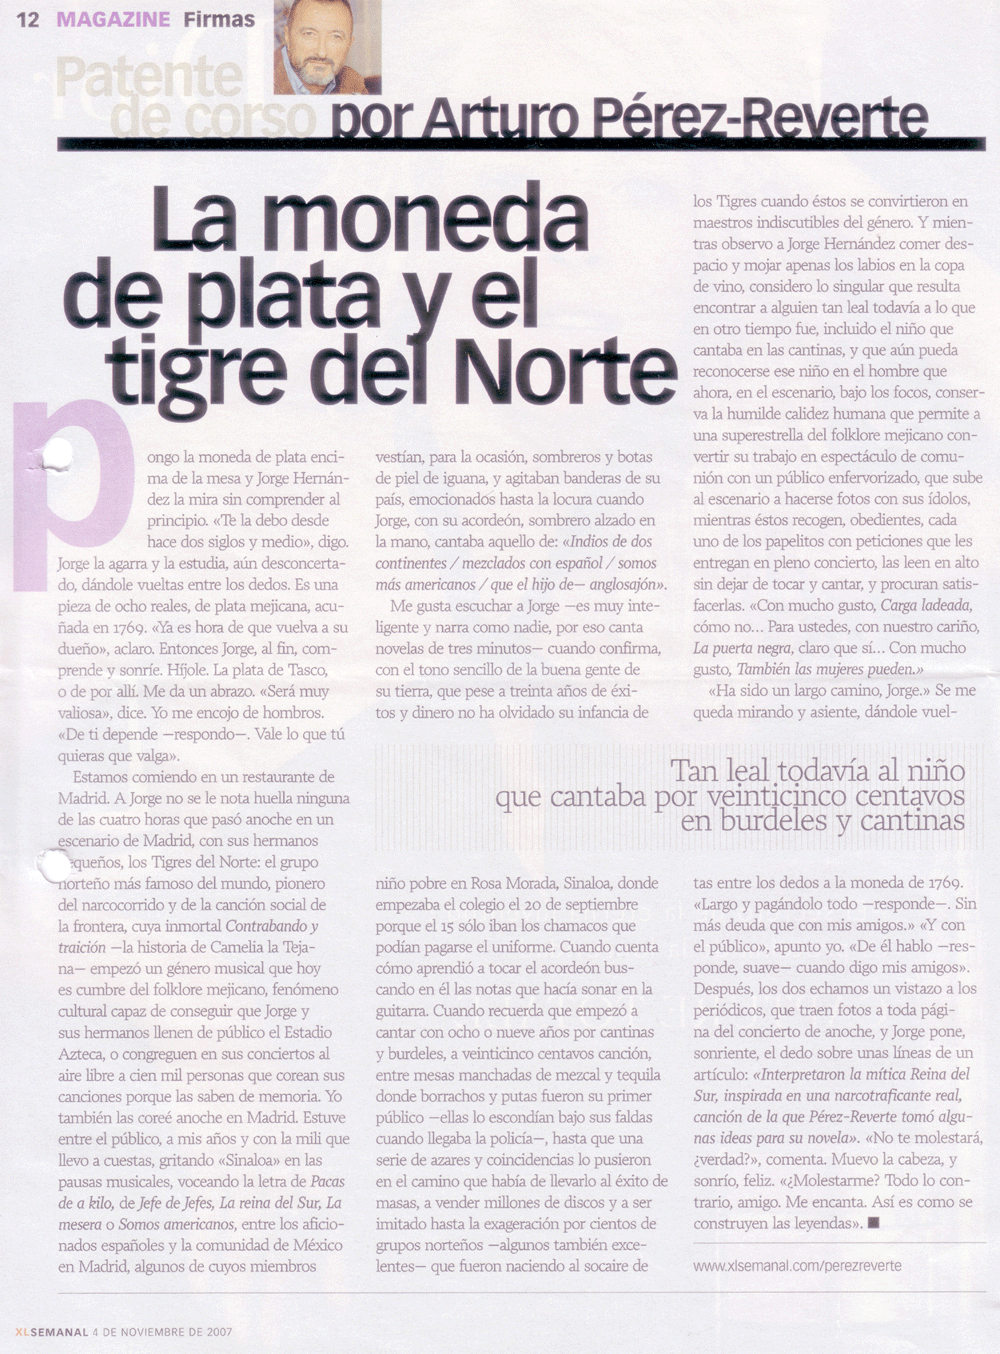 "La moneda de plata y el tigre del norte" El Semanal, 4 de noviembre de 2007